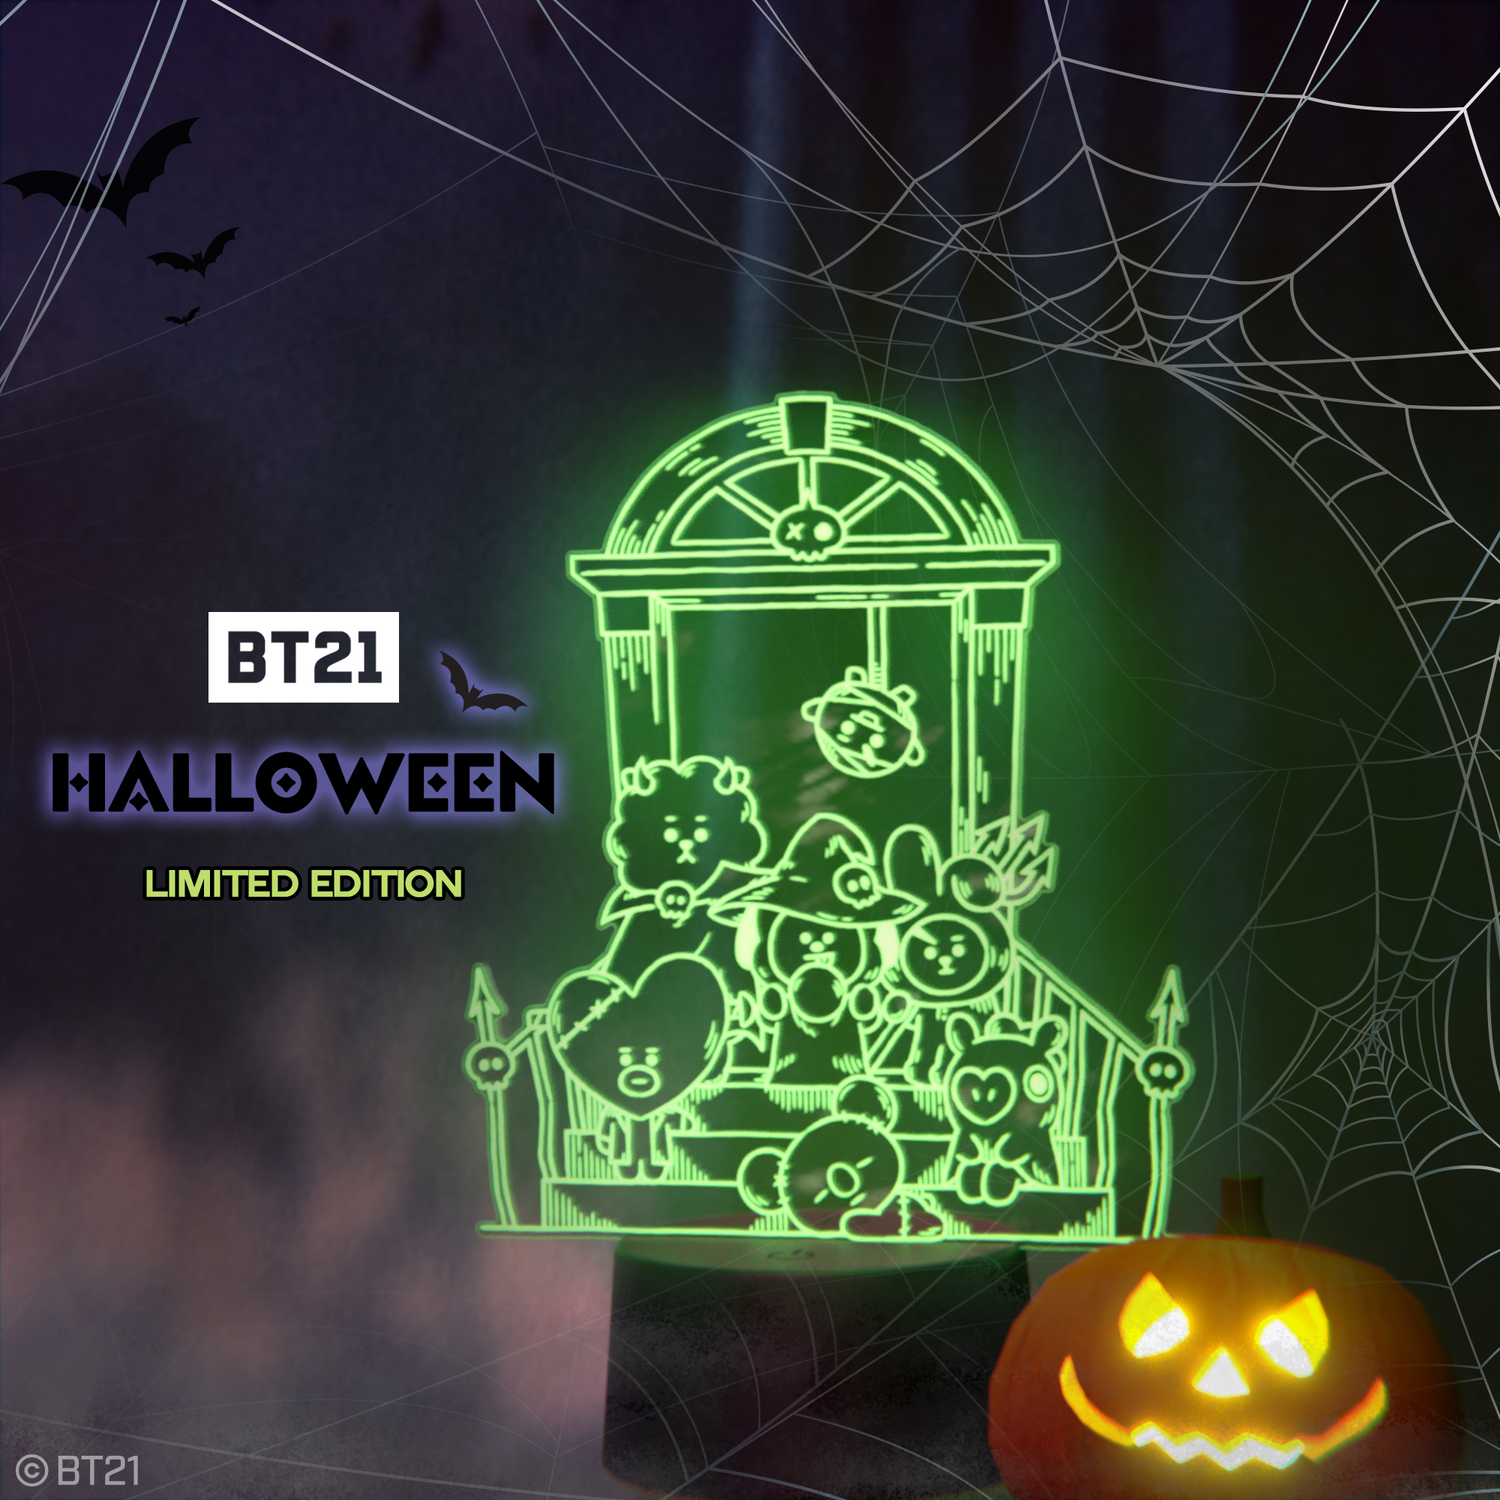 BT21 Halloween Special Release